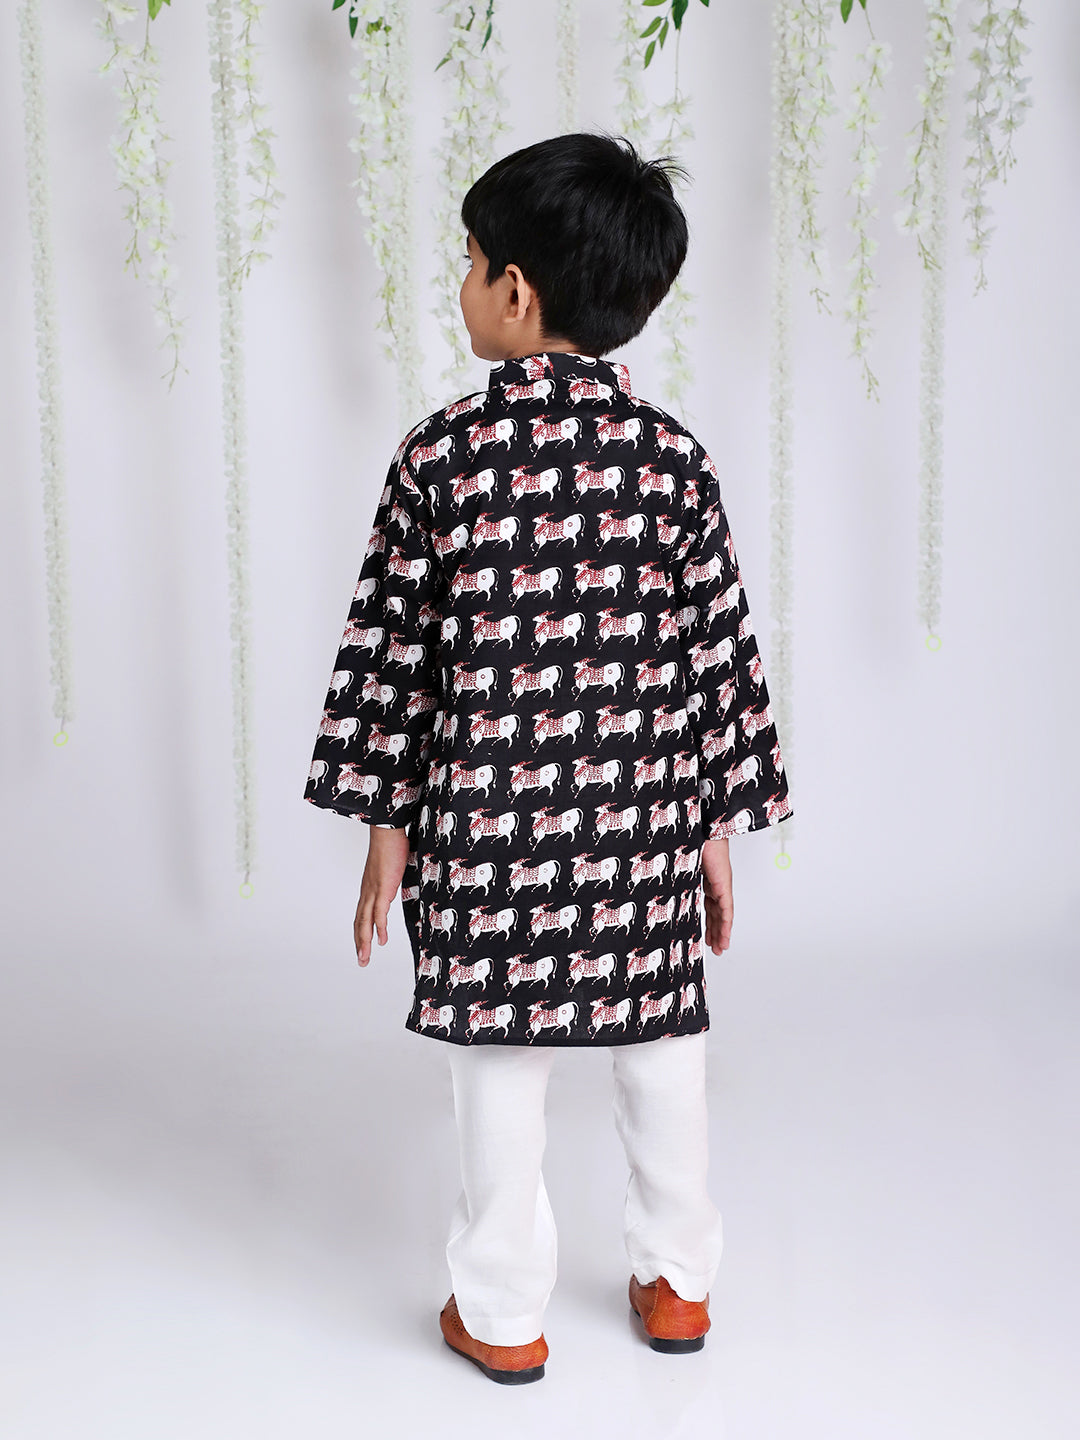 Boy's Animal Print Kurta Pajama - KID1 Boys